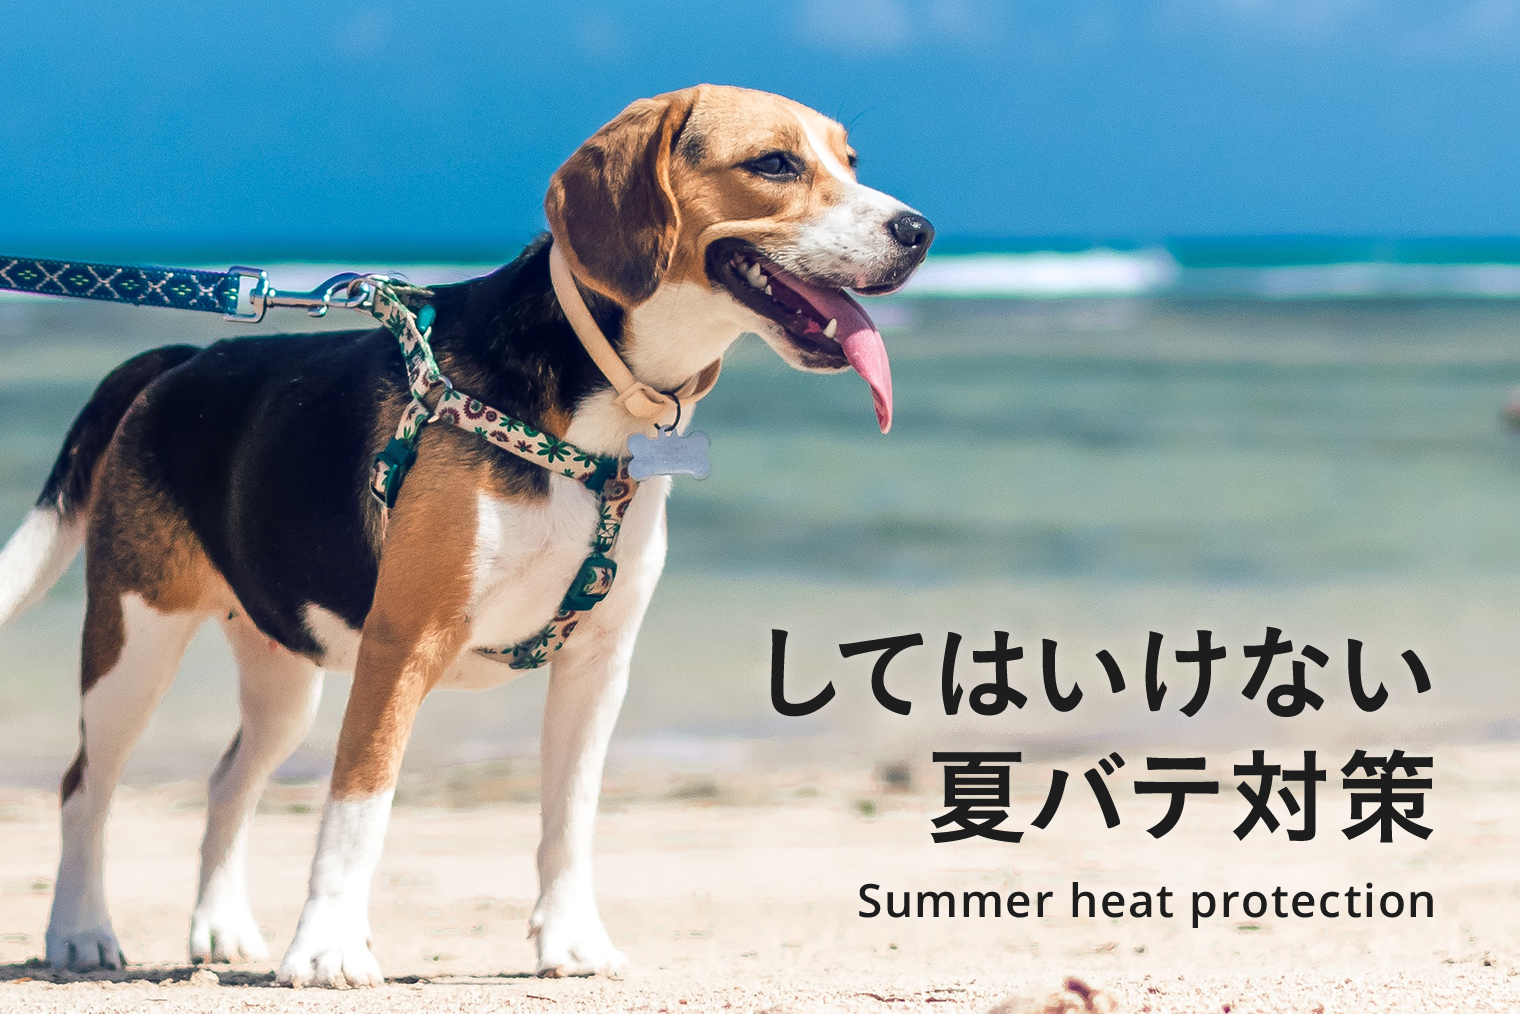 商品の特性 愛犬　ワンちゃん　クーラー　開発商品　格安で　猛暑到来　ワンちゃんも熱中症に 犬用品